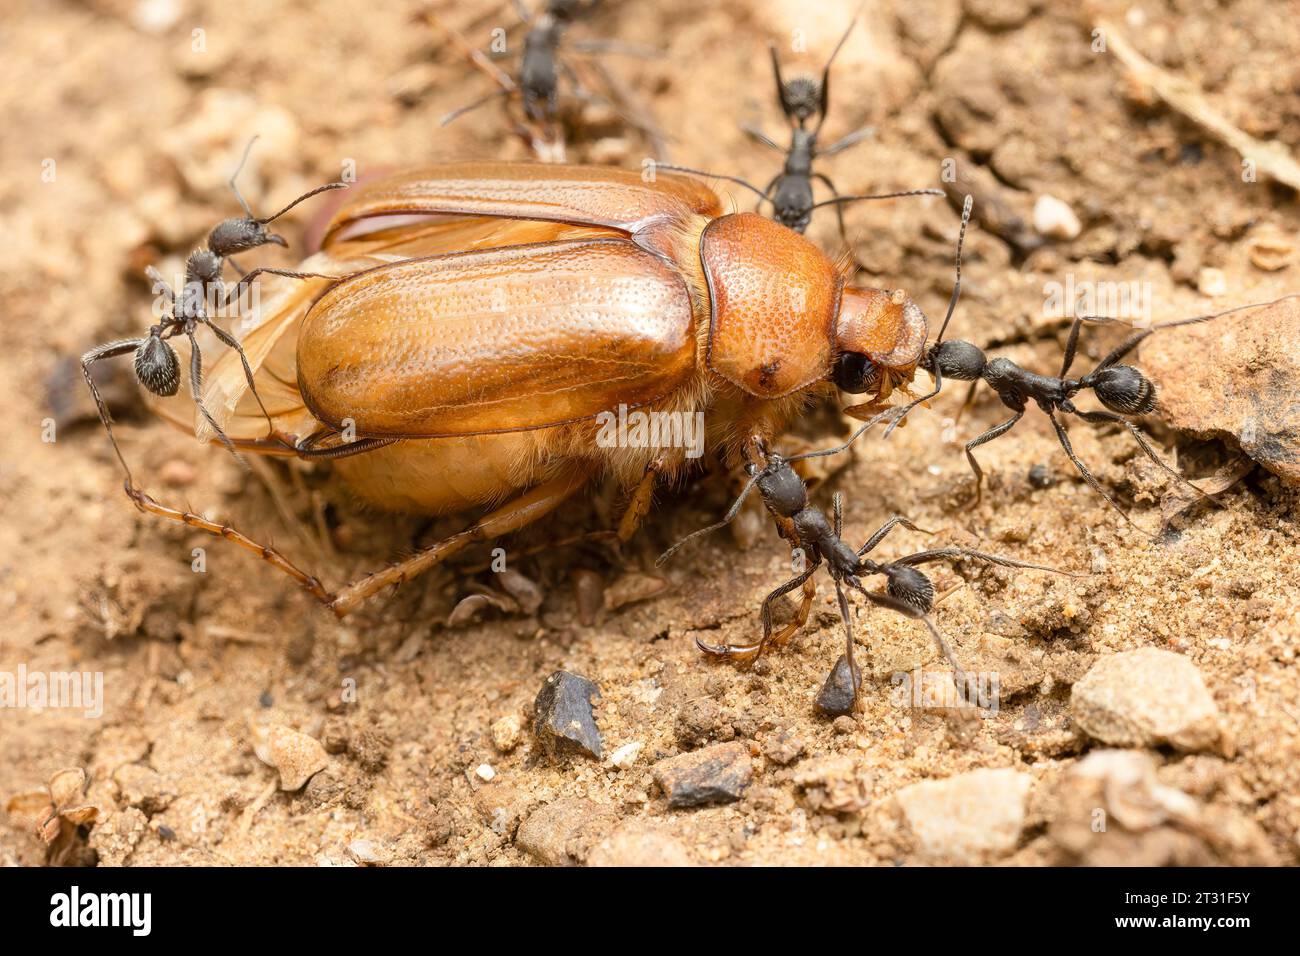 Une équipe de fourmis transportant la carcasse d'un scarabée vers leur nid pour consommation, Espagne. Banque D'Images